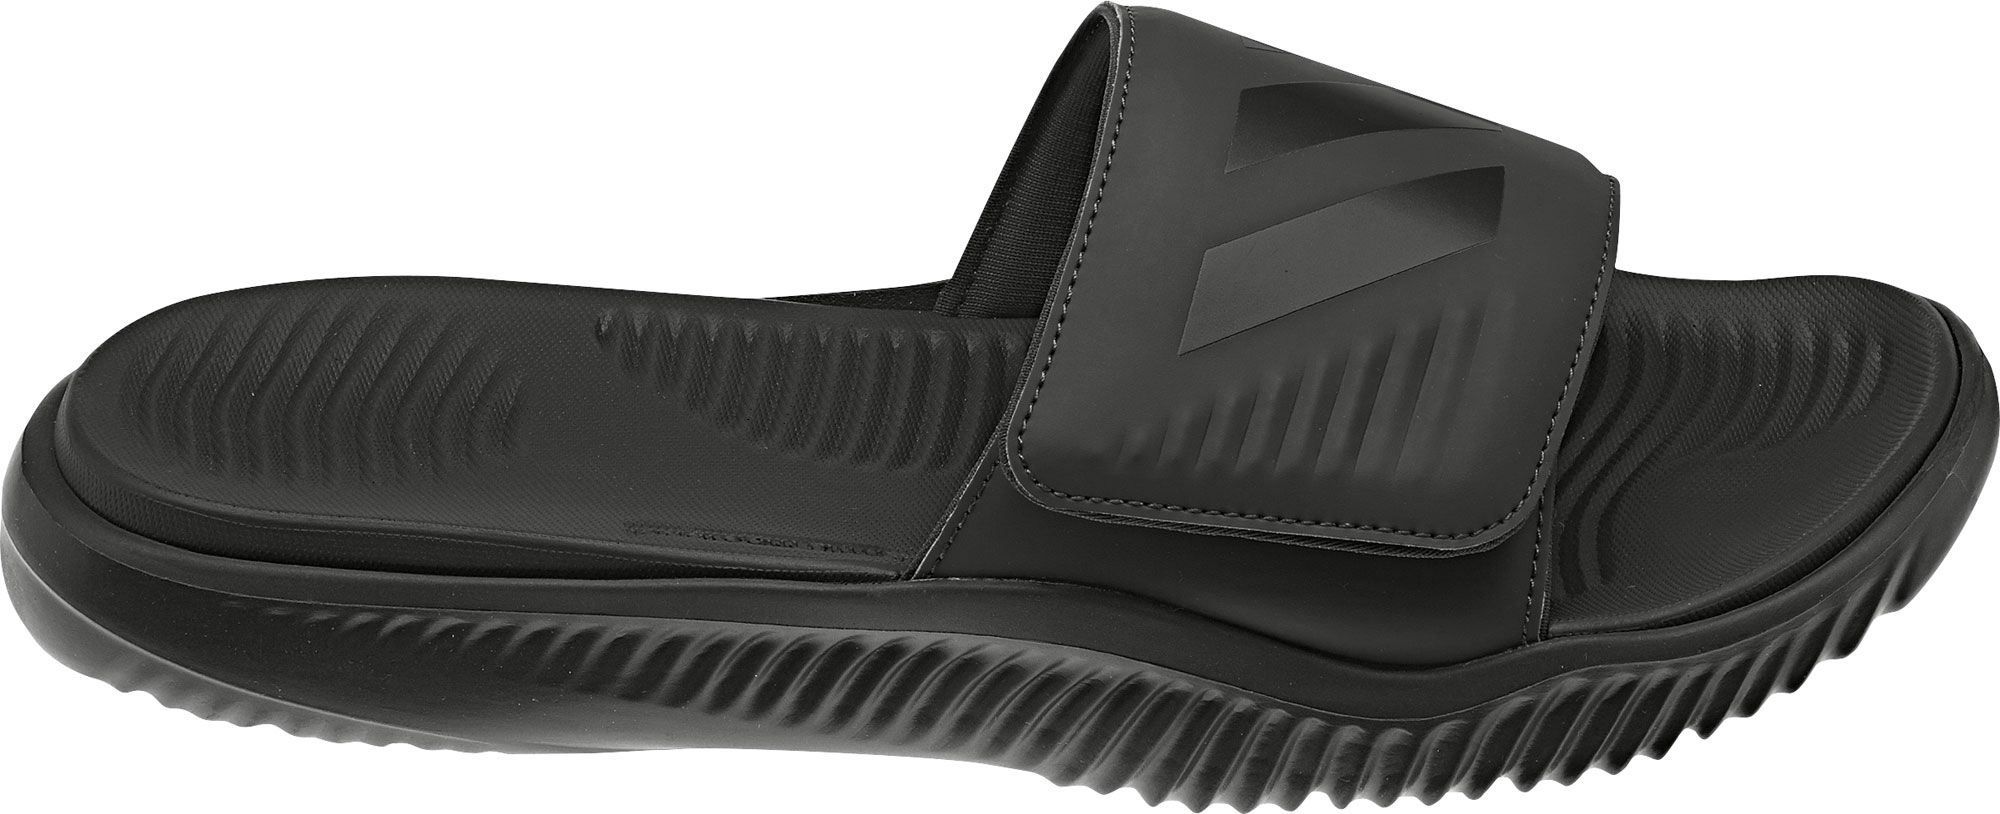 adidas black on black slides